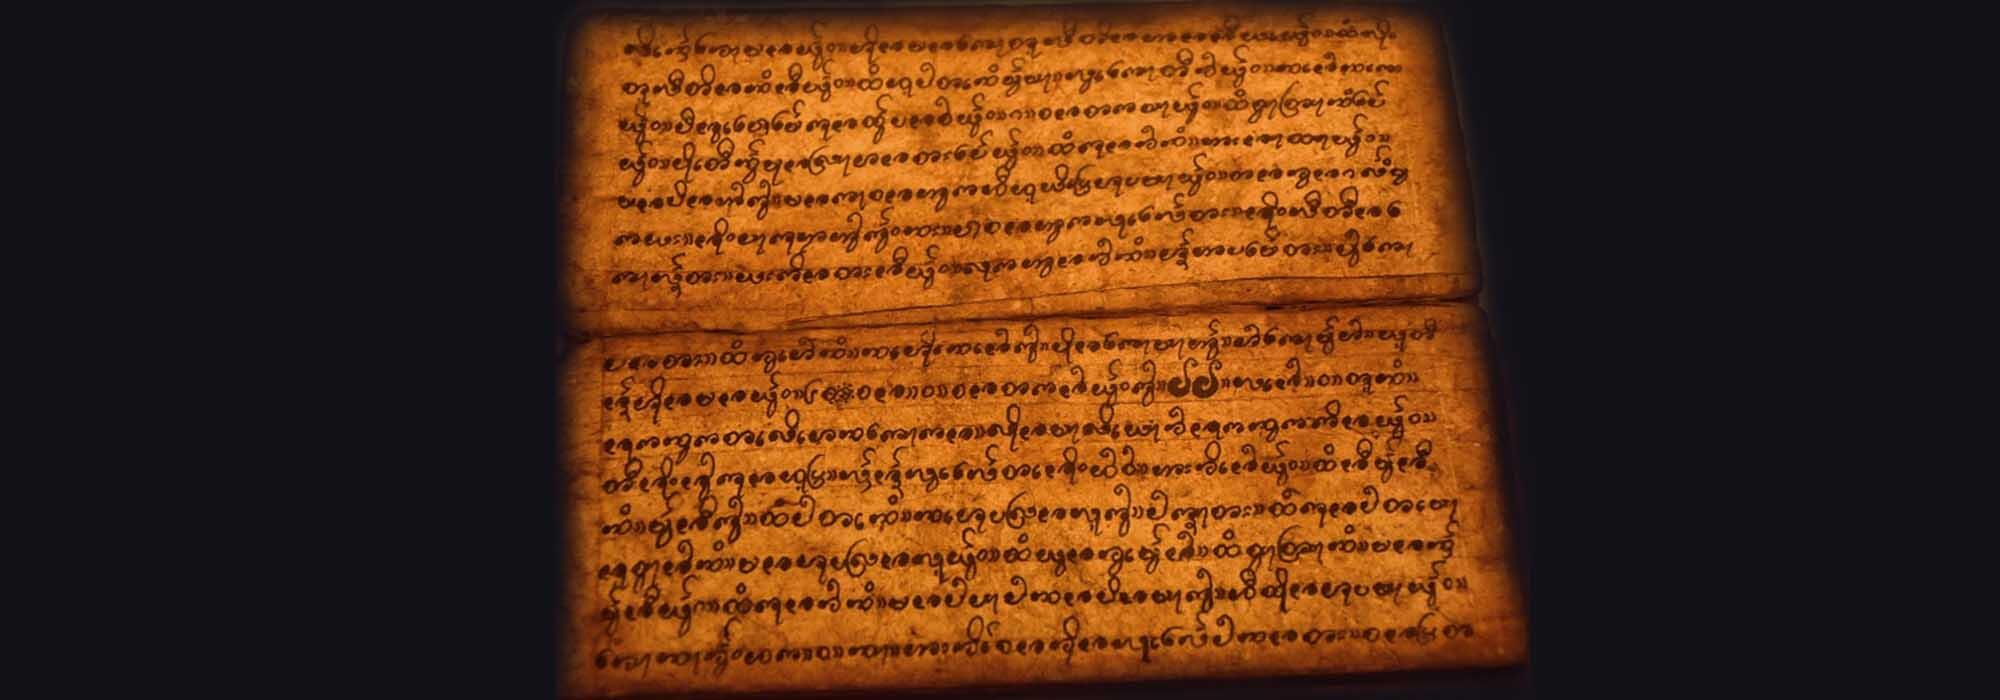 Ancient Manuscript of India